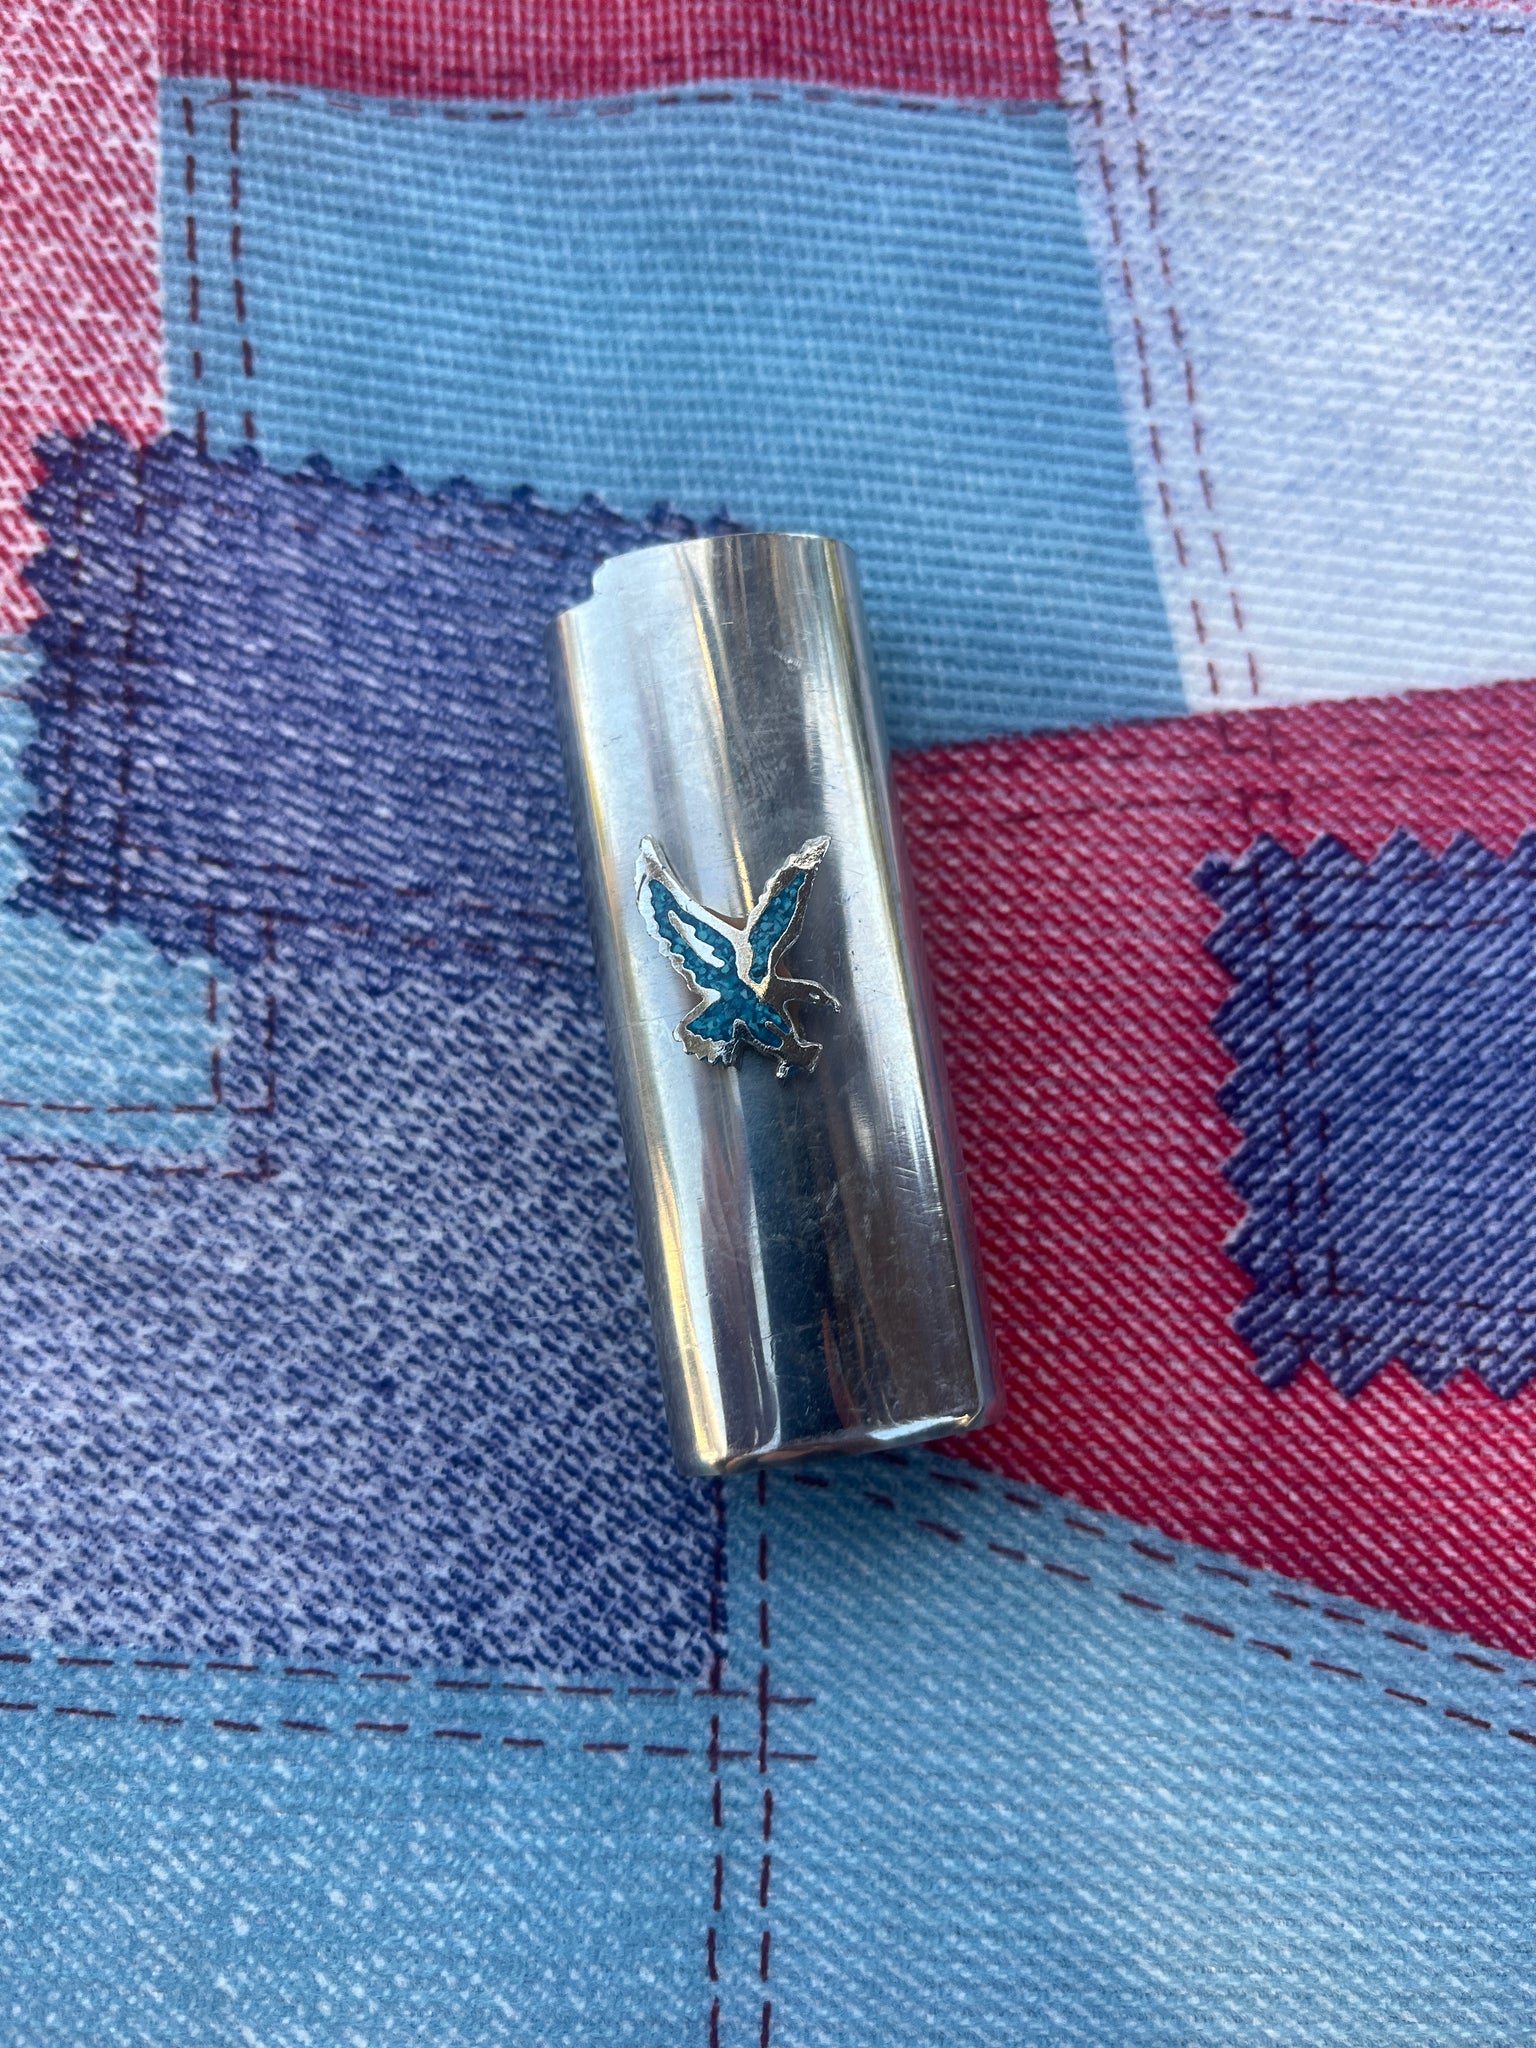 1970s Genuine Turquoise Lighter Case – ShopBullseye